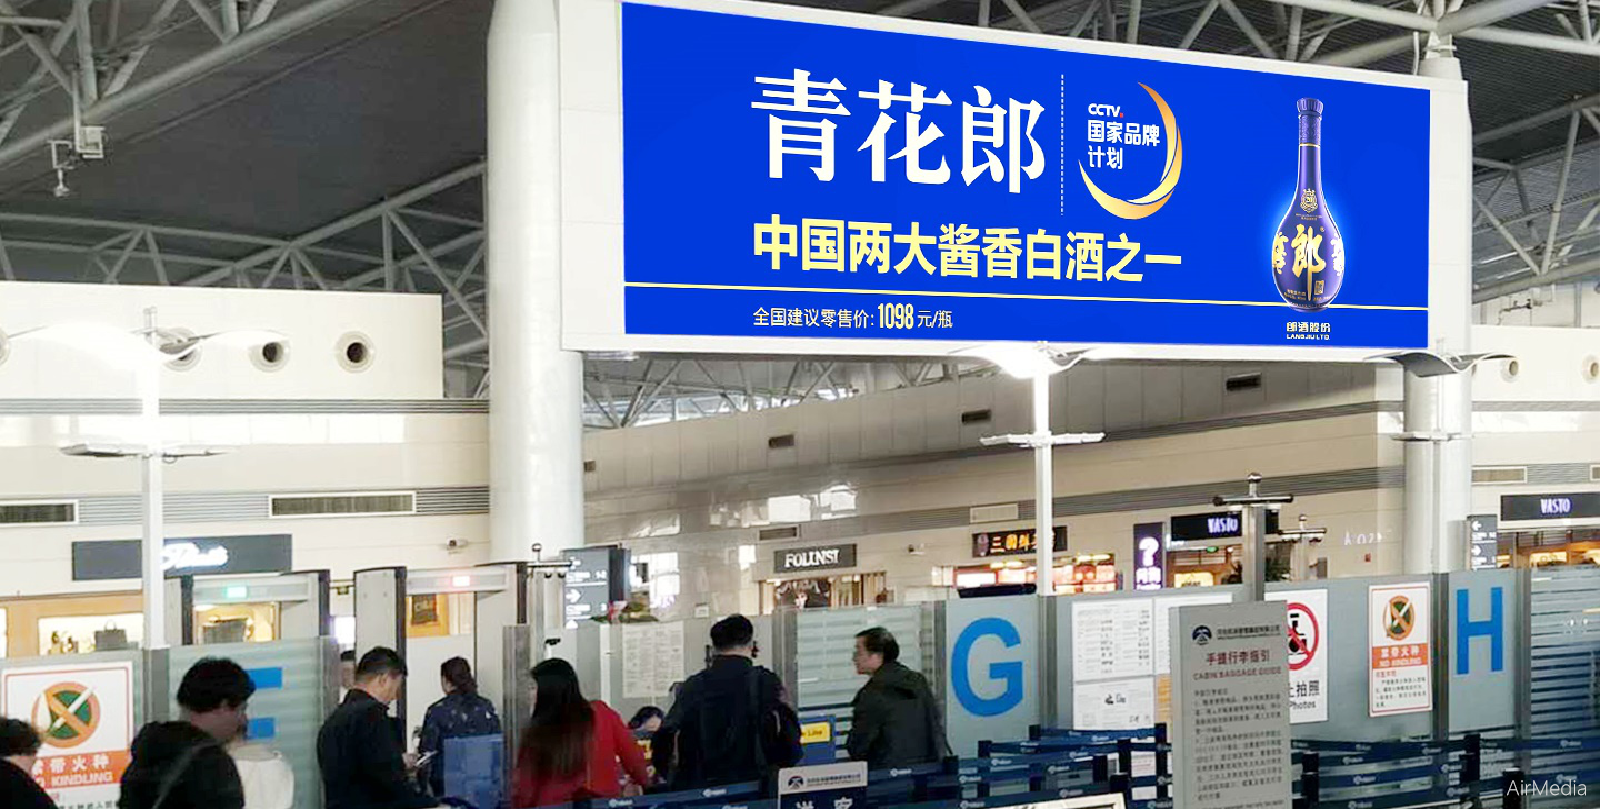 成都深圳广州北京上海机场高铁飞机广告公司